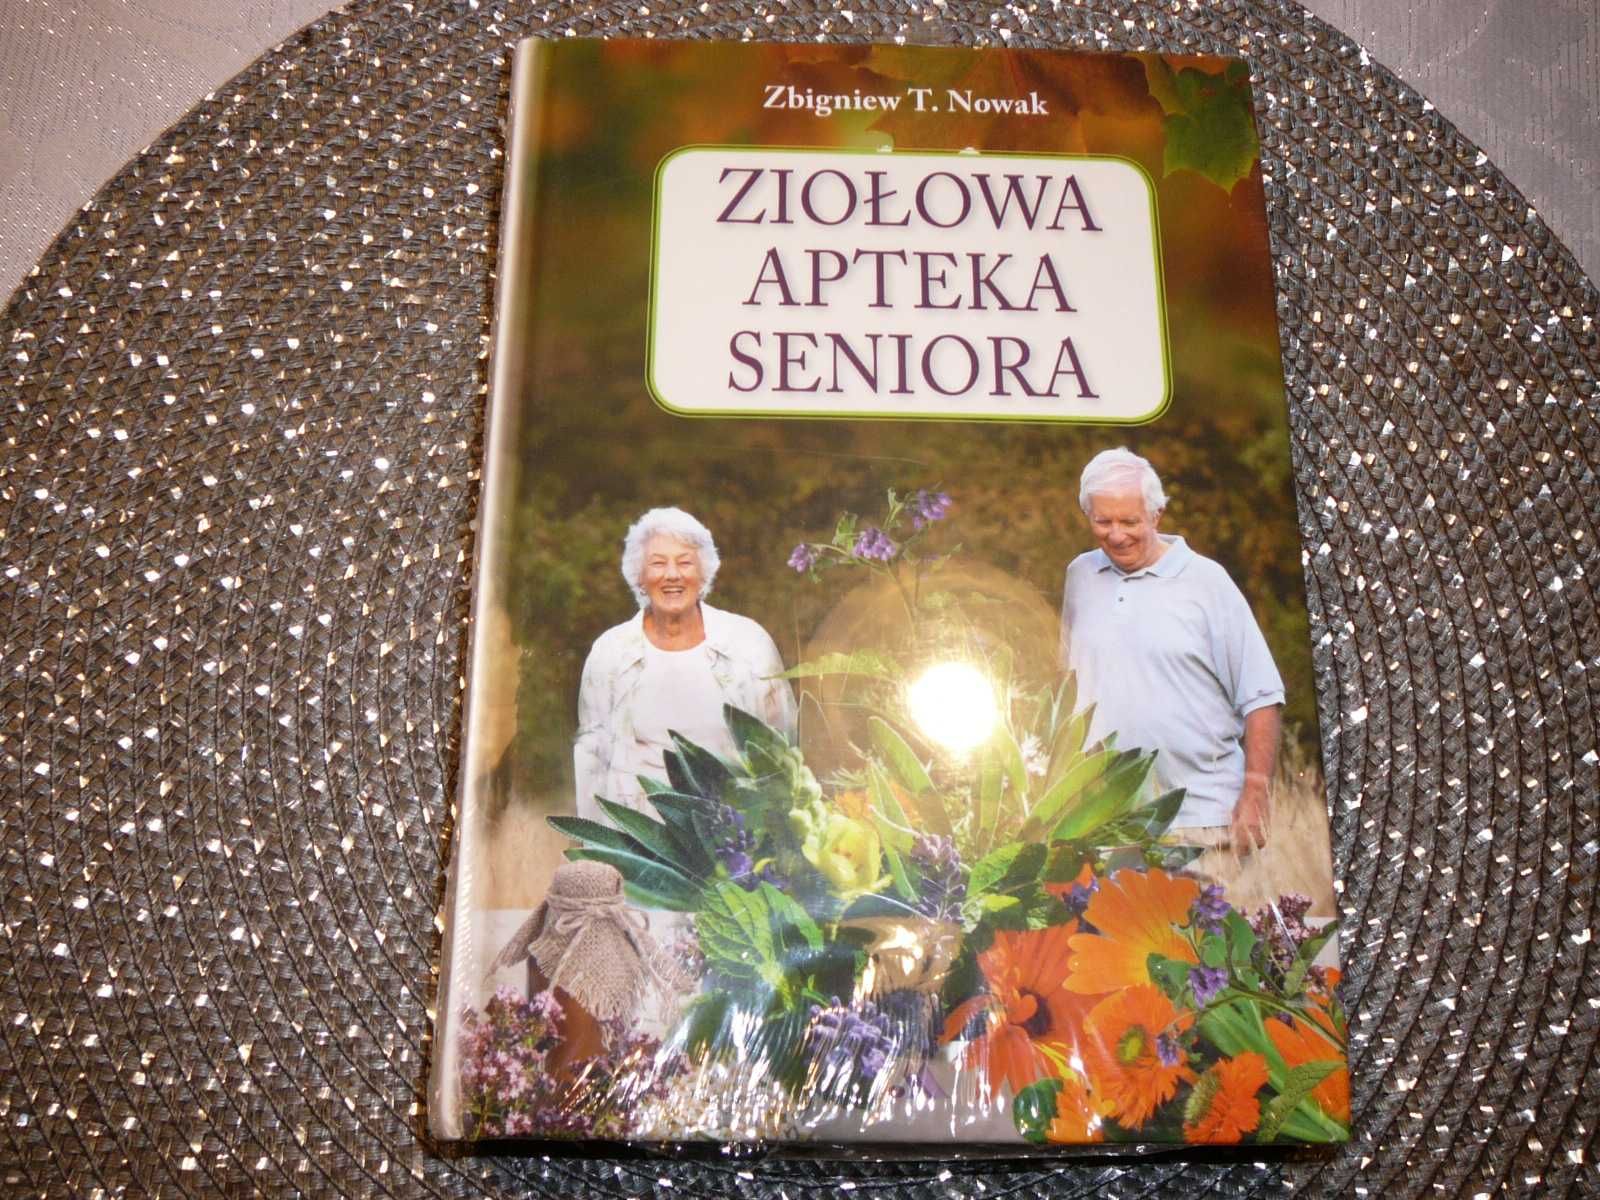 Ziołowa apteka seniora Zbigniew T, Nowak /nowa zafoliowana/